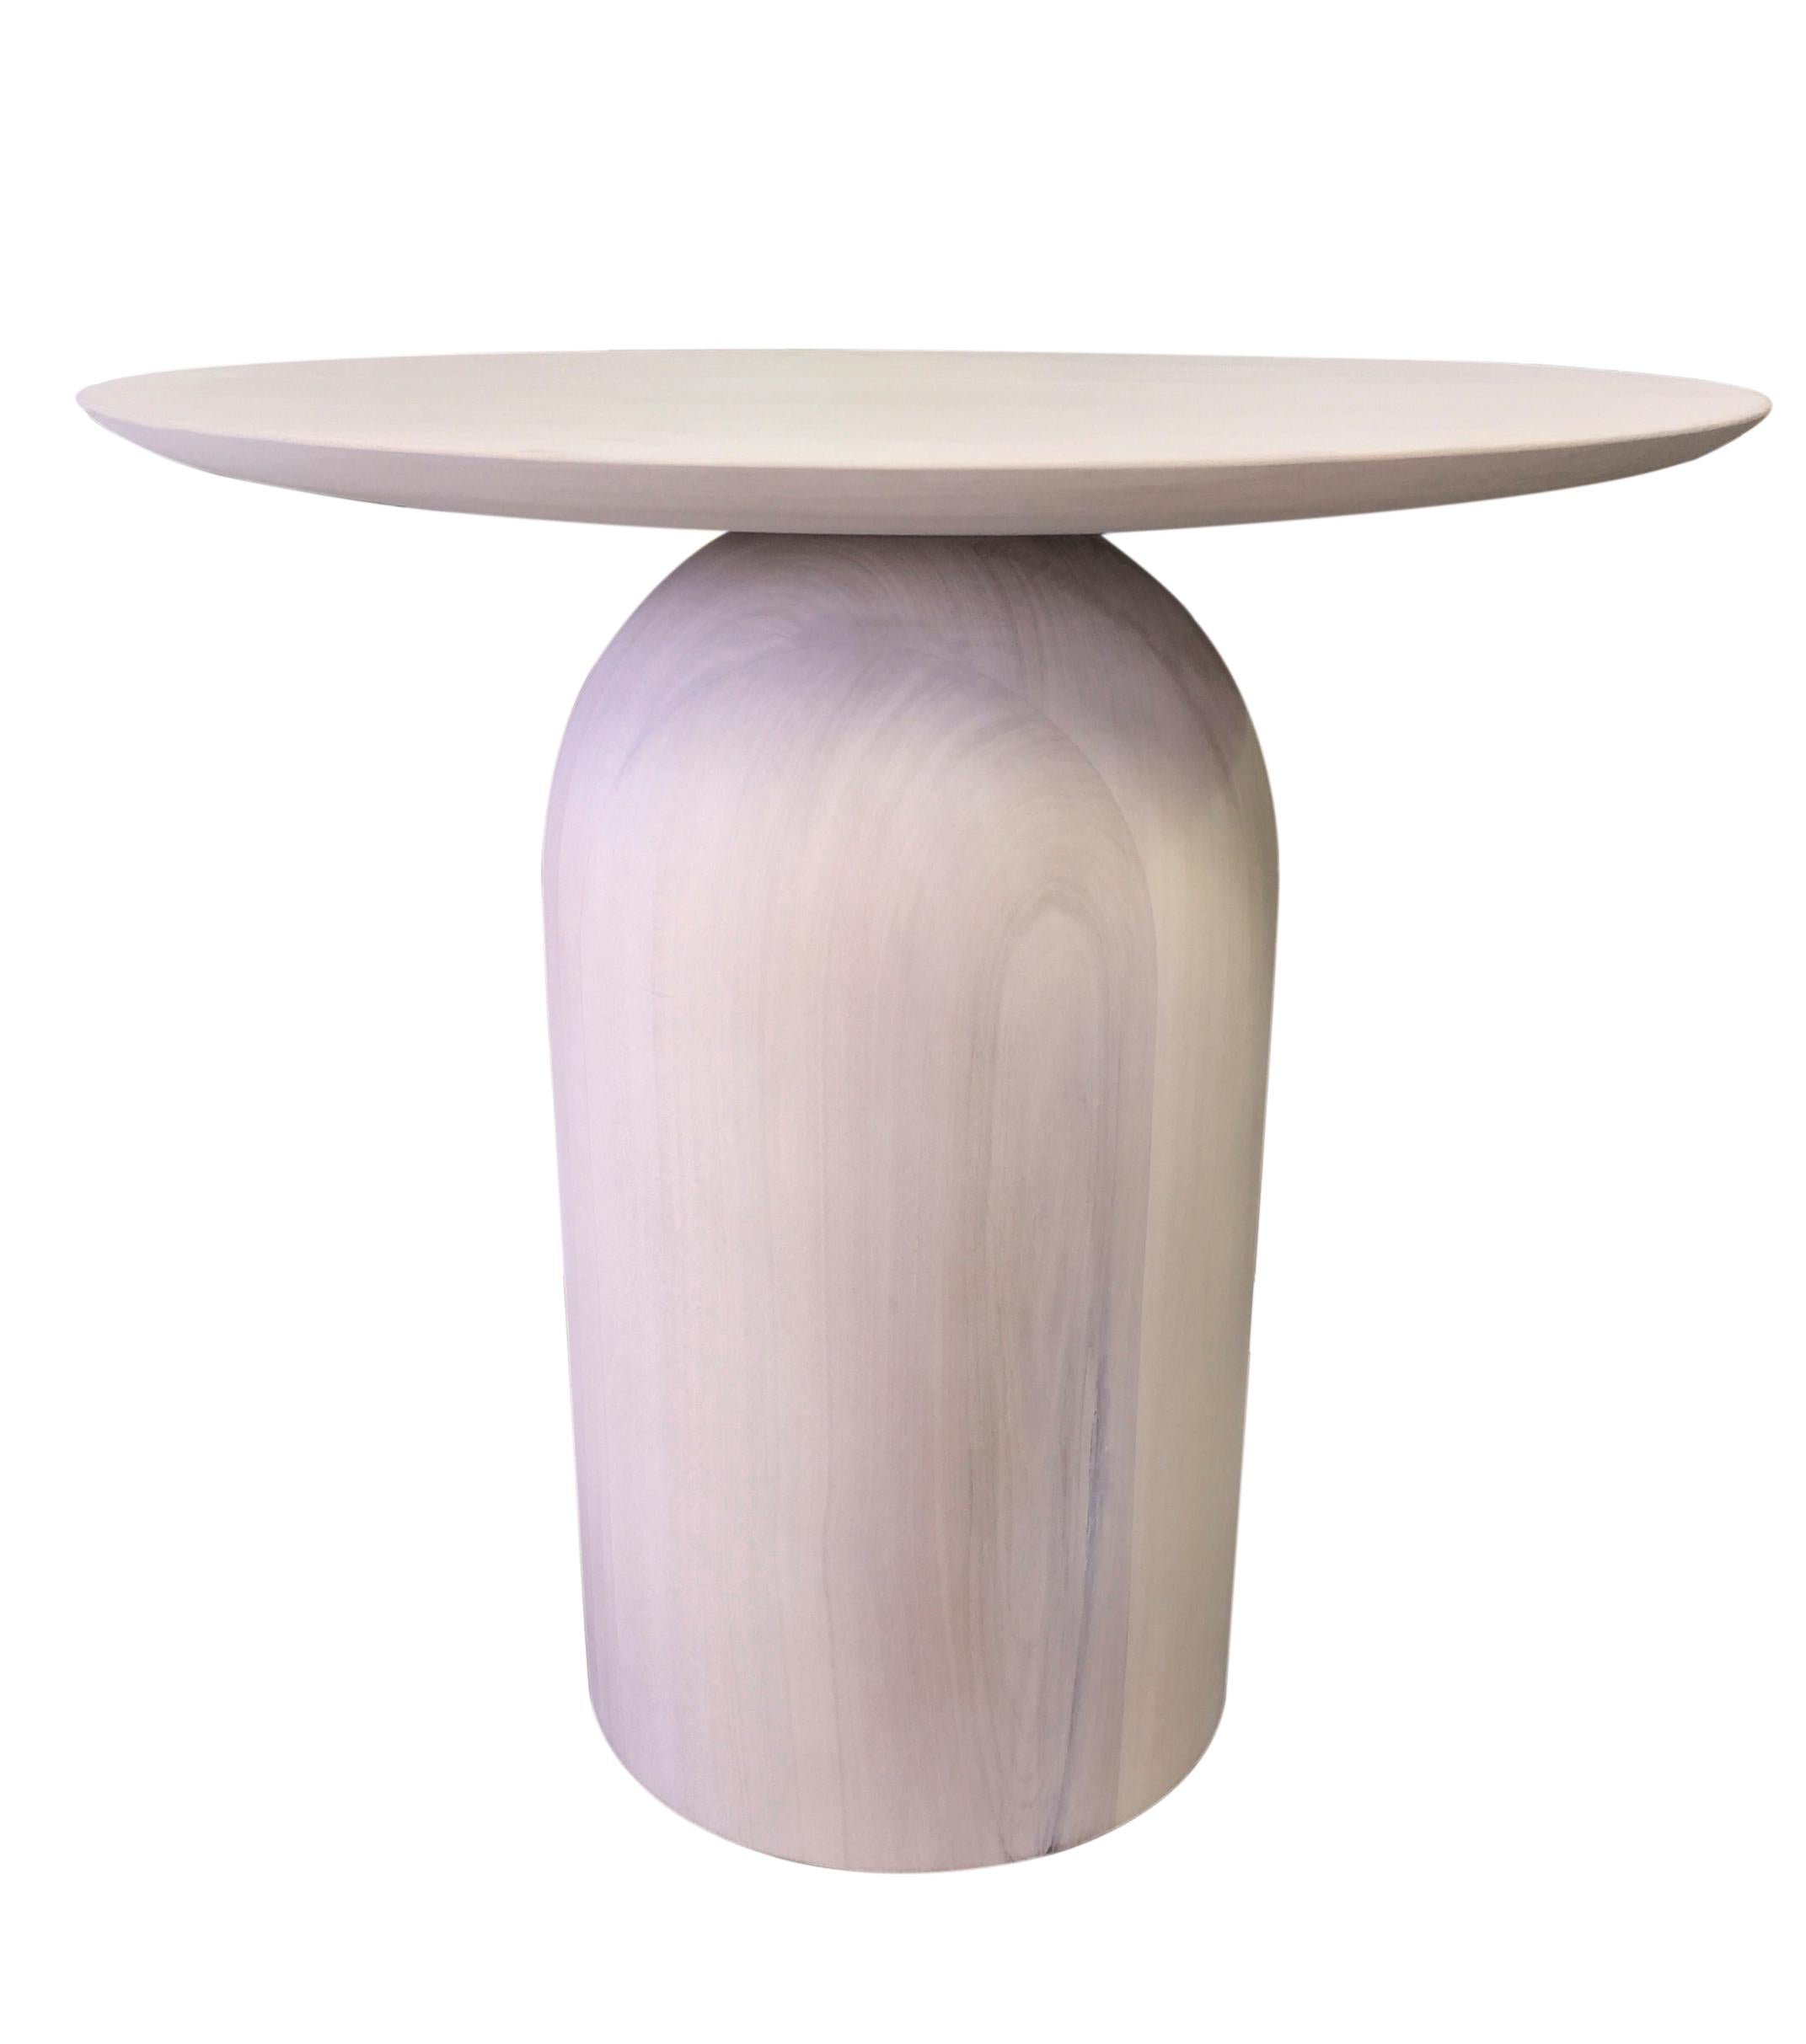 Dieser originelle skulpturale EGG-Beistelltisch mit runder Platte aus Massivholz ist ein raffiniertes Beispiel für handwerkliches, organisches Design des 21. Seine minimale Form, die an die Skulpturen von Brancusi und Arp erinnert, passt sowohl in